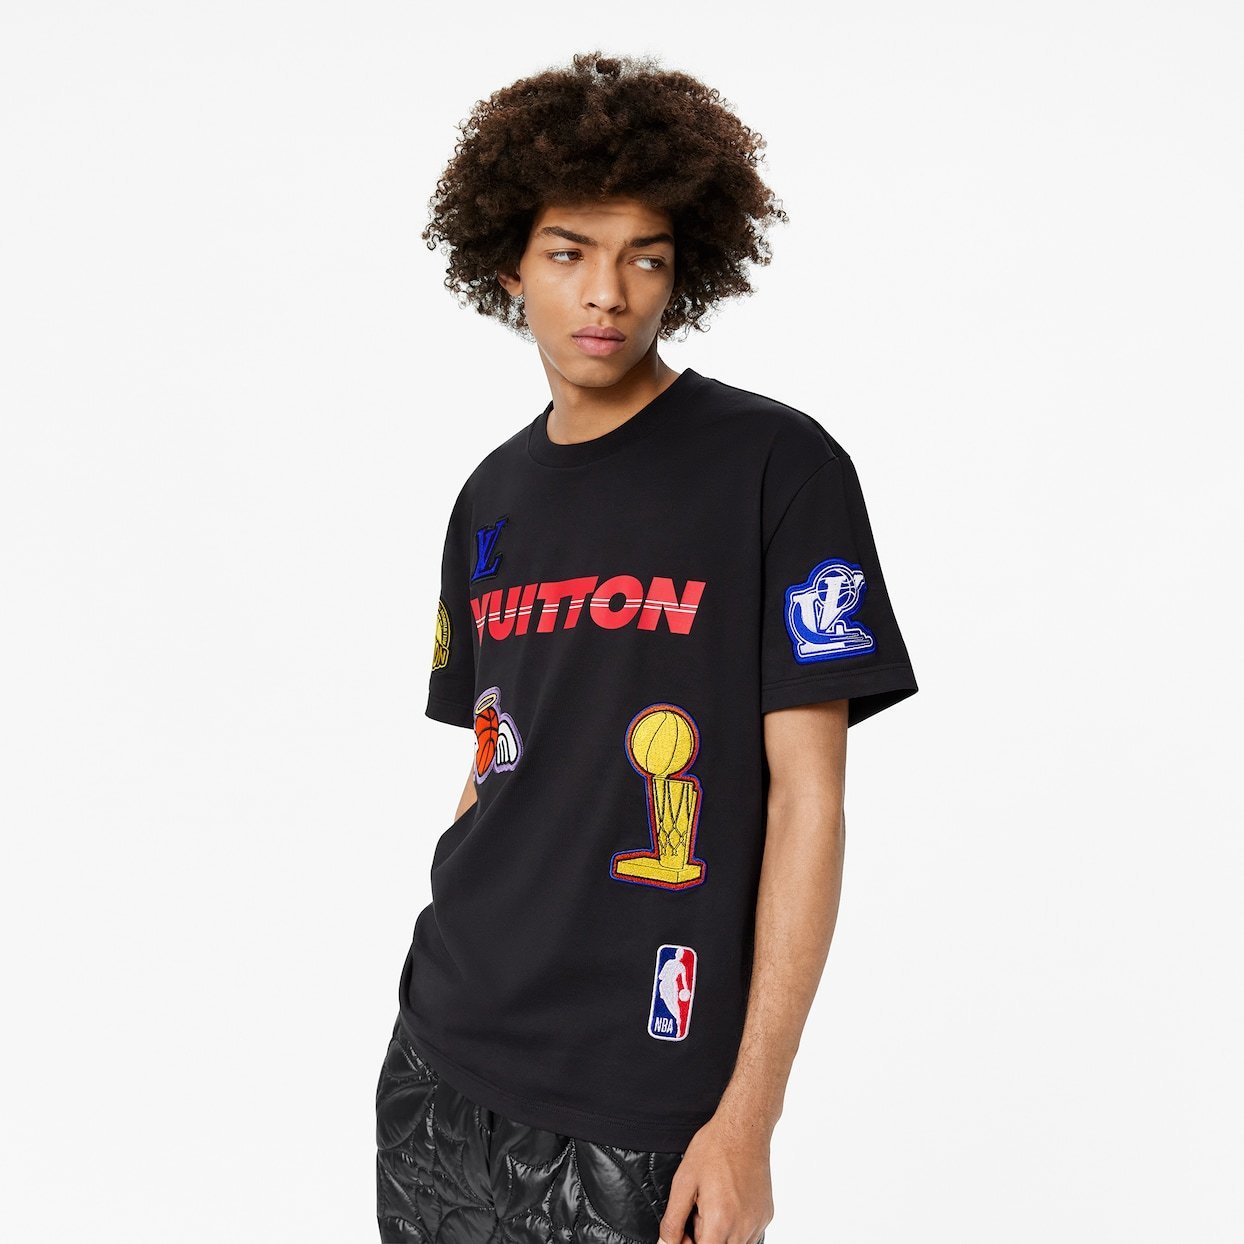 Louis Vuitton NBA Authenticated Denim Jacket